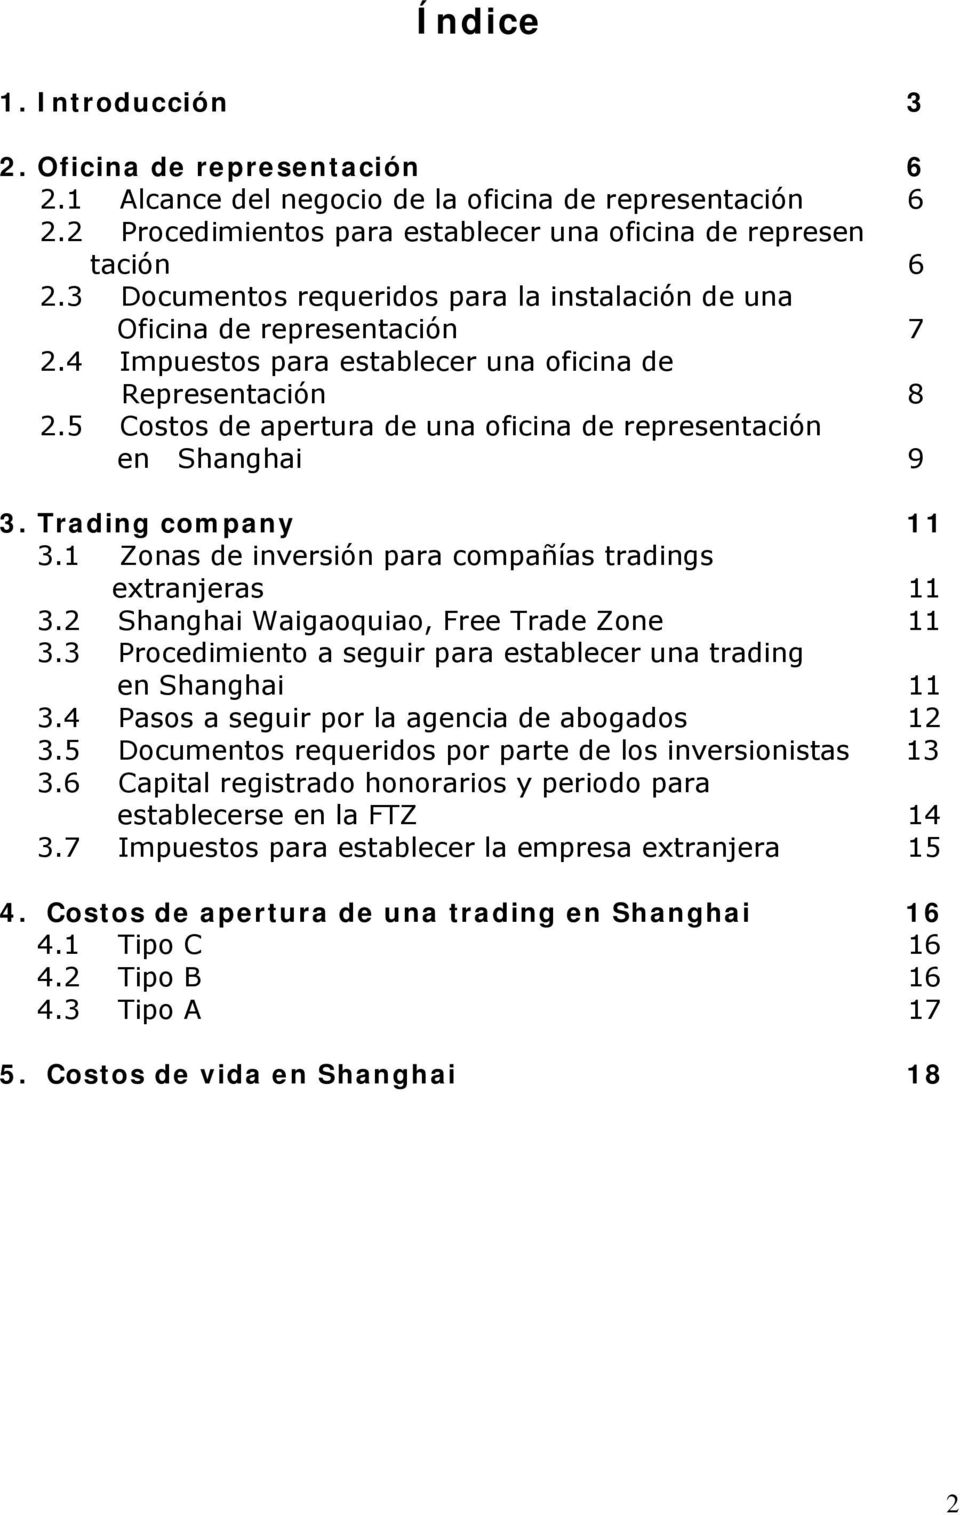 5 Costos de apertura de una oficina de representación en Shanghai 9 3. Trading company 11 3.1 Zonas de inversión para compañías tradings extranjeras 11 3.2 Shanghai Waigaoquiao, Free Trade Zone 11 3.